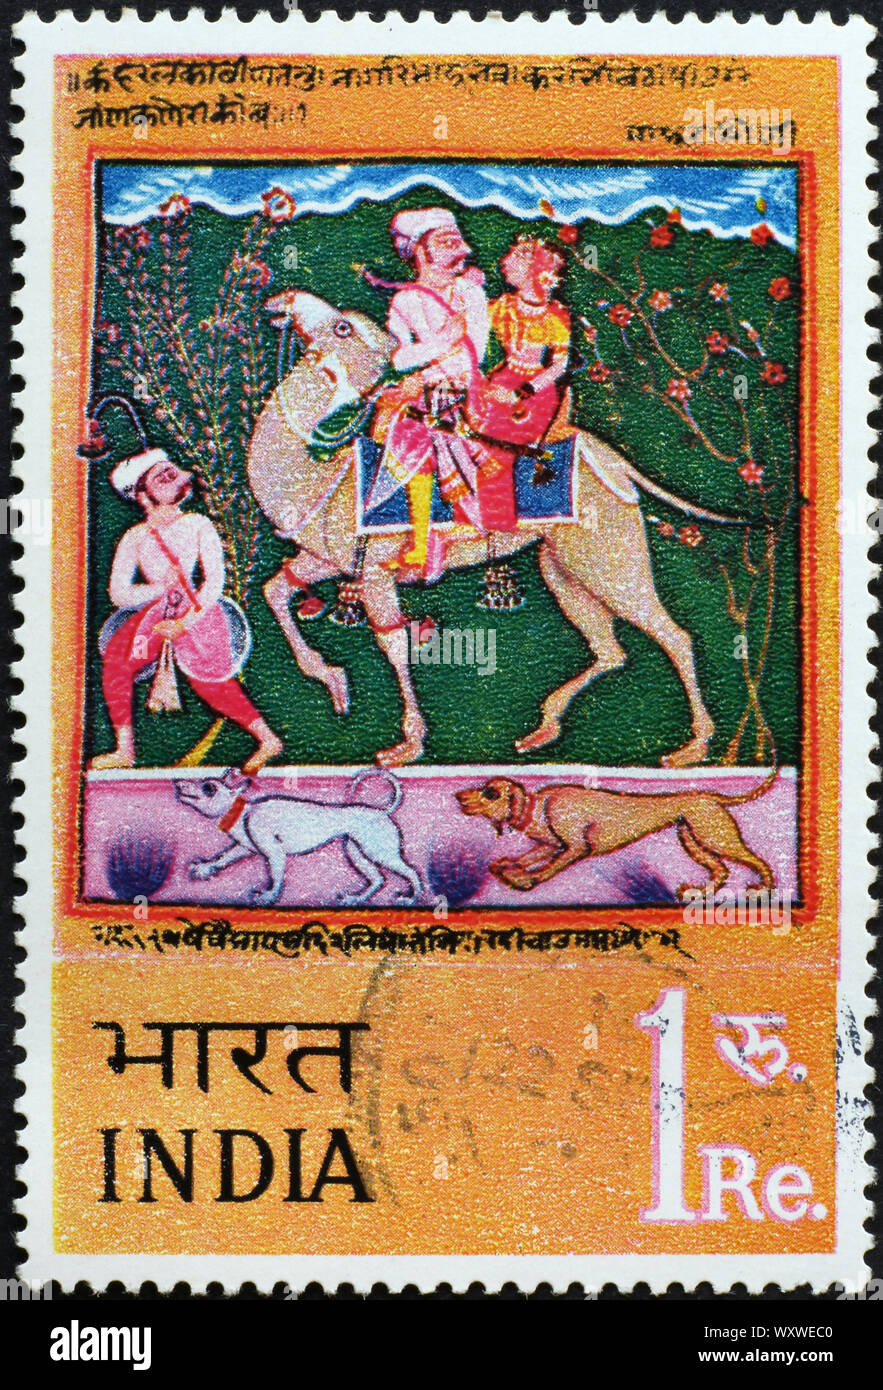 Indische Malerei auf Briefmarke Stockfoto